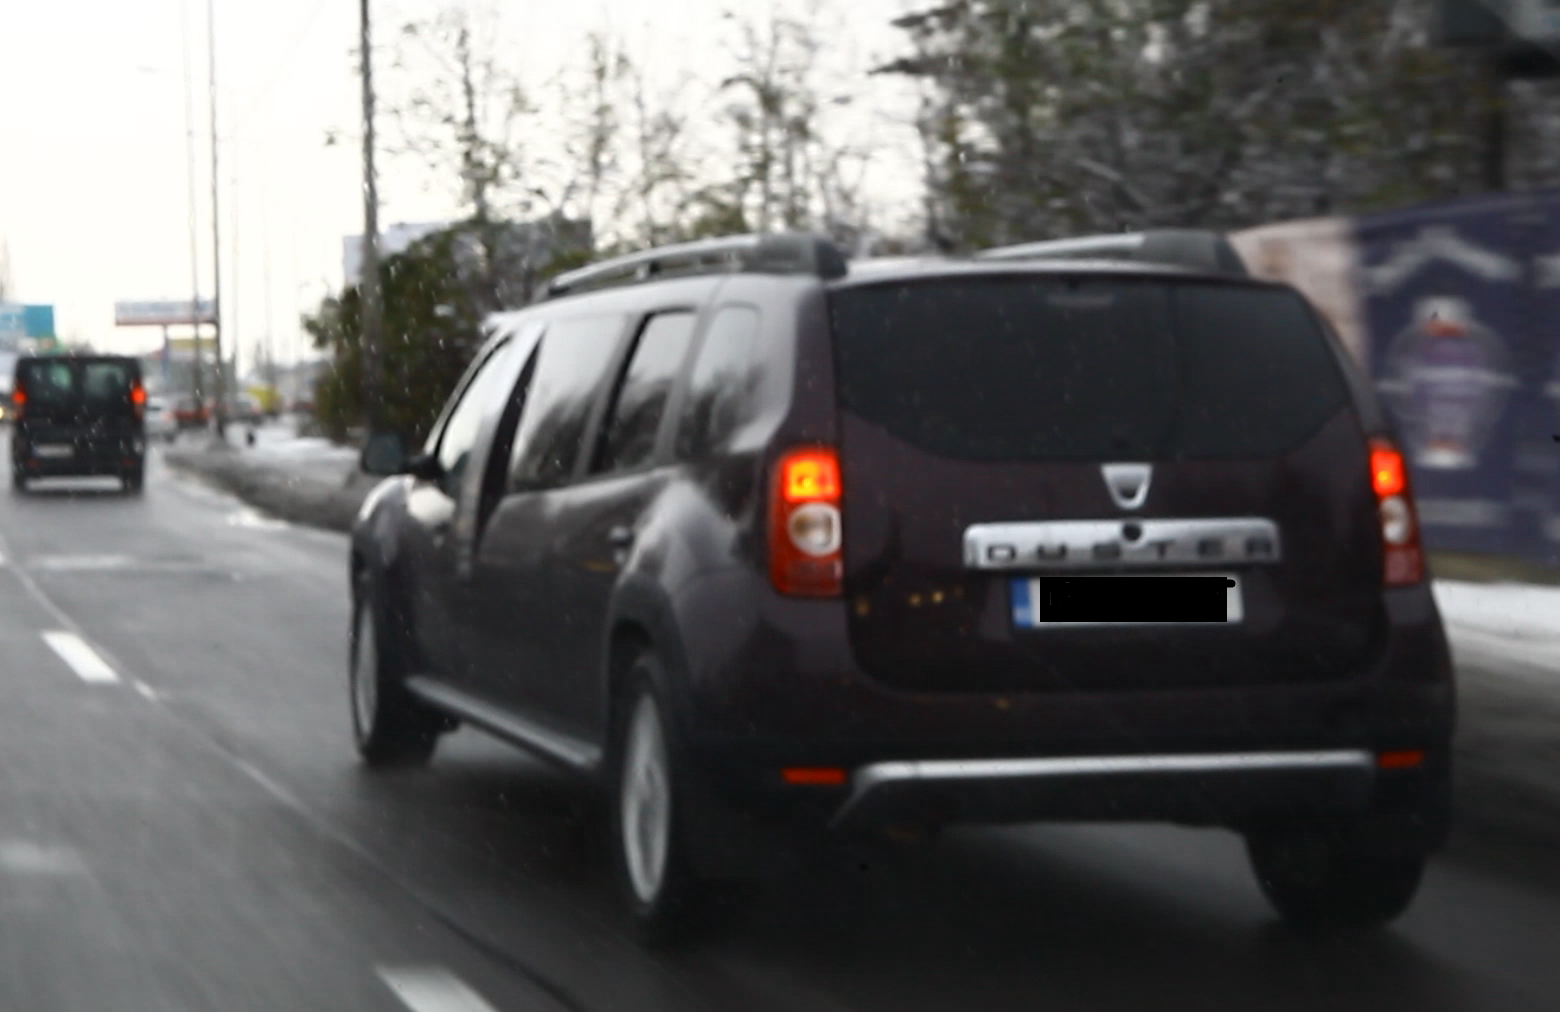 Aparitie socanta pe drumurile din Bucuresti, limuzina starneste uimirea soferilor.